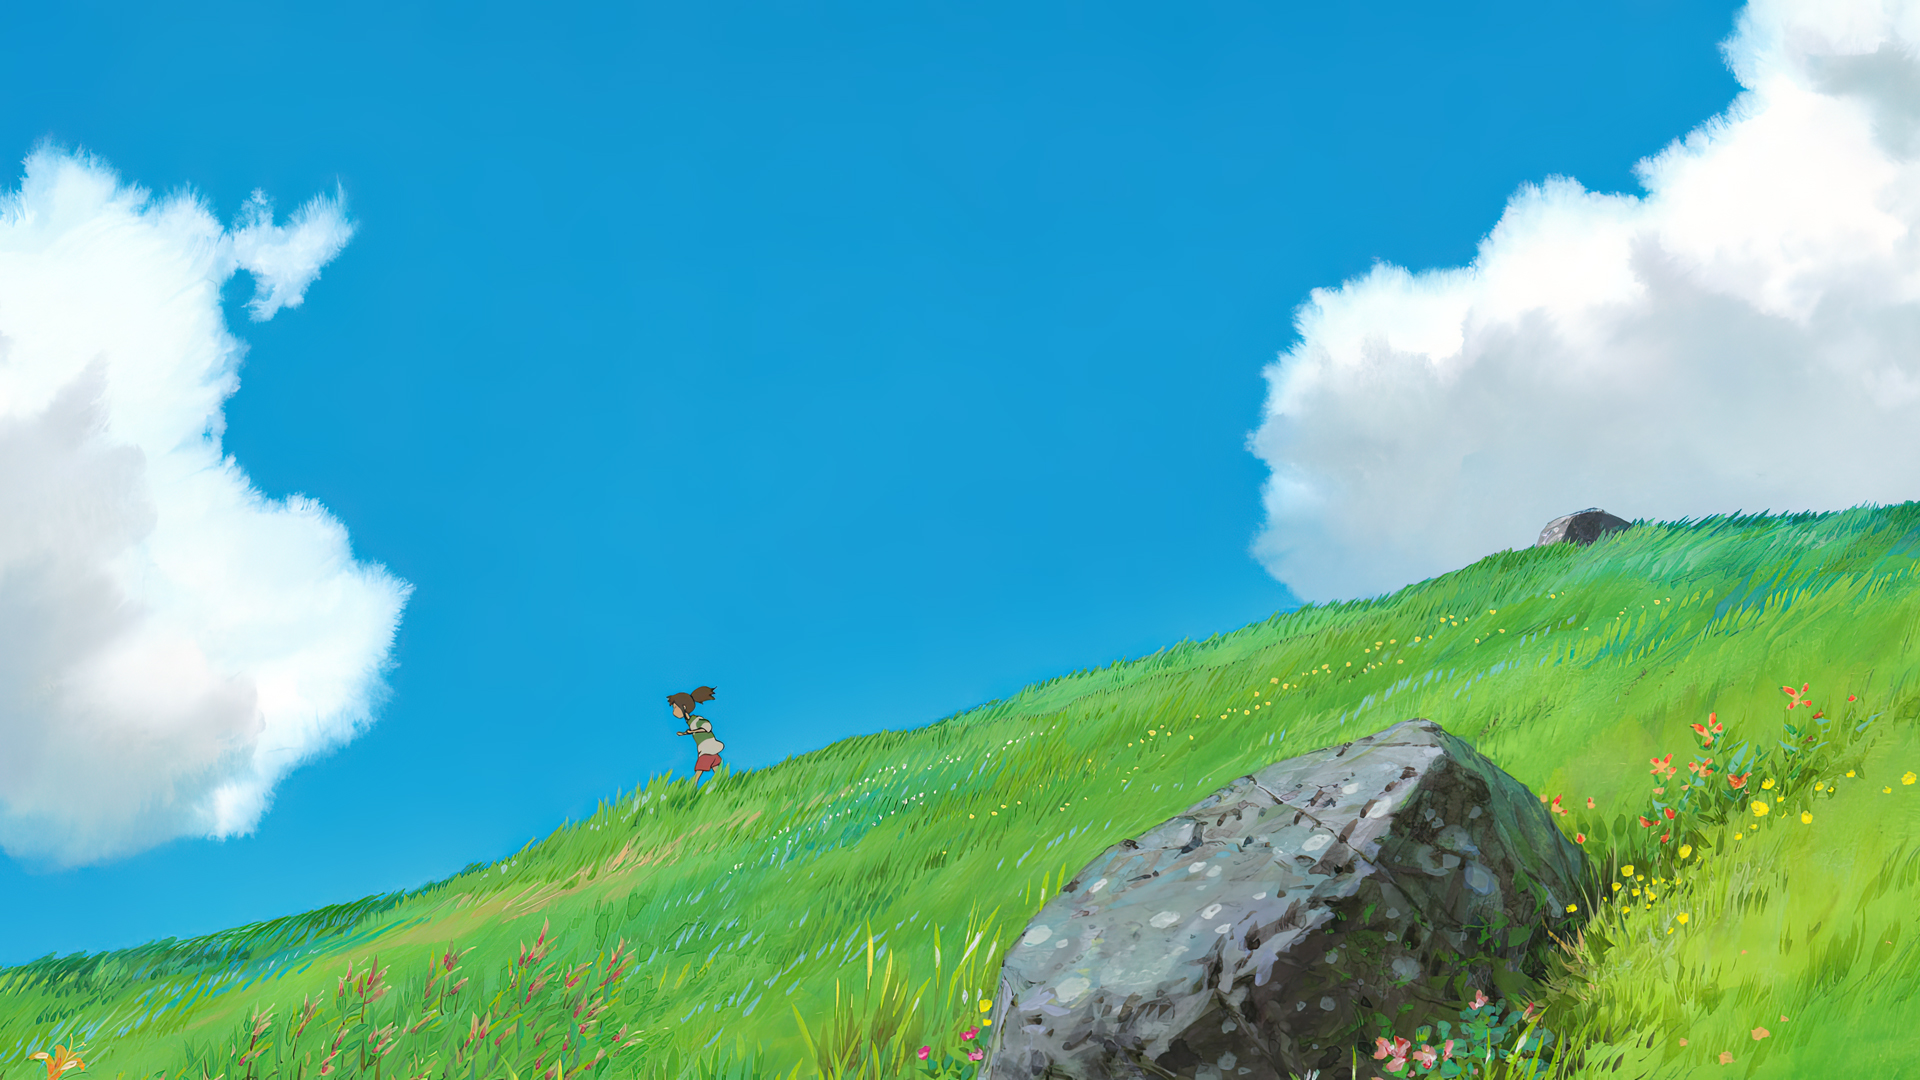 Anime 1920x1080 Spirited Away animated movies film stills sky clouds grass Hayao Miyazaki summer anime anime girls flowers running animation rocks field Studio Ghibli Chihiro Kazuo Oga